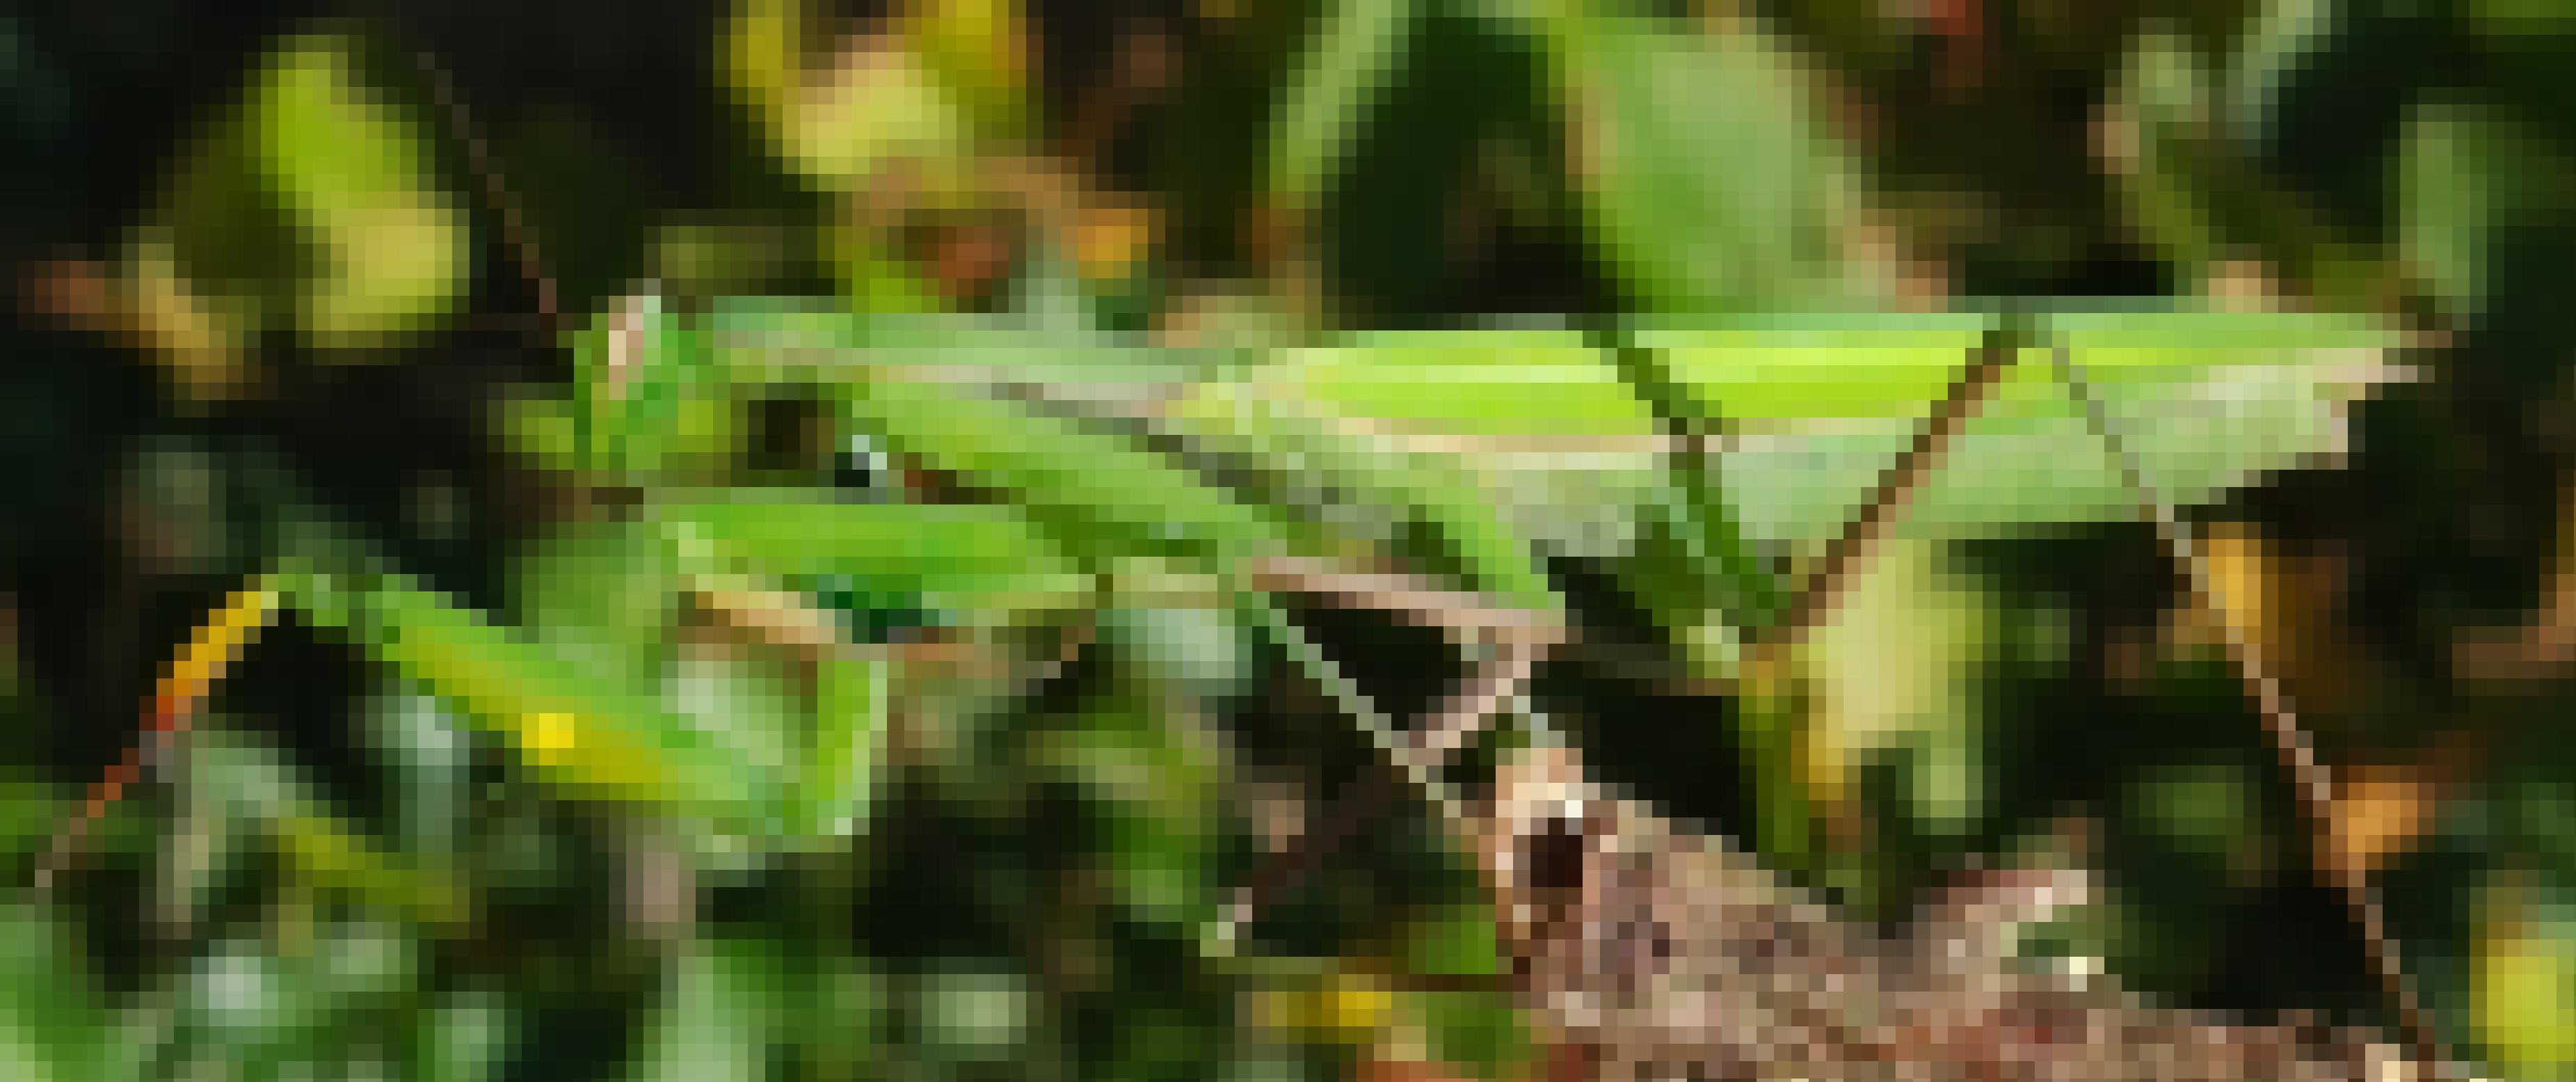 Ein grünes Insekt sitzt auf einem Zweig. Sein rechter Fangarm ist geöffnet, der linke zugeklappt. Darin hält es ein kleines Beutetier.